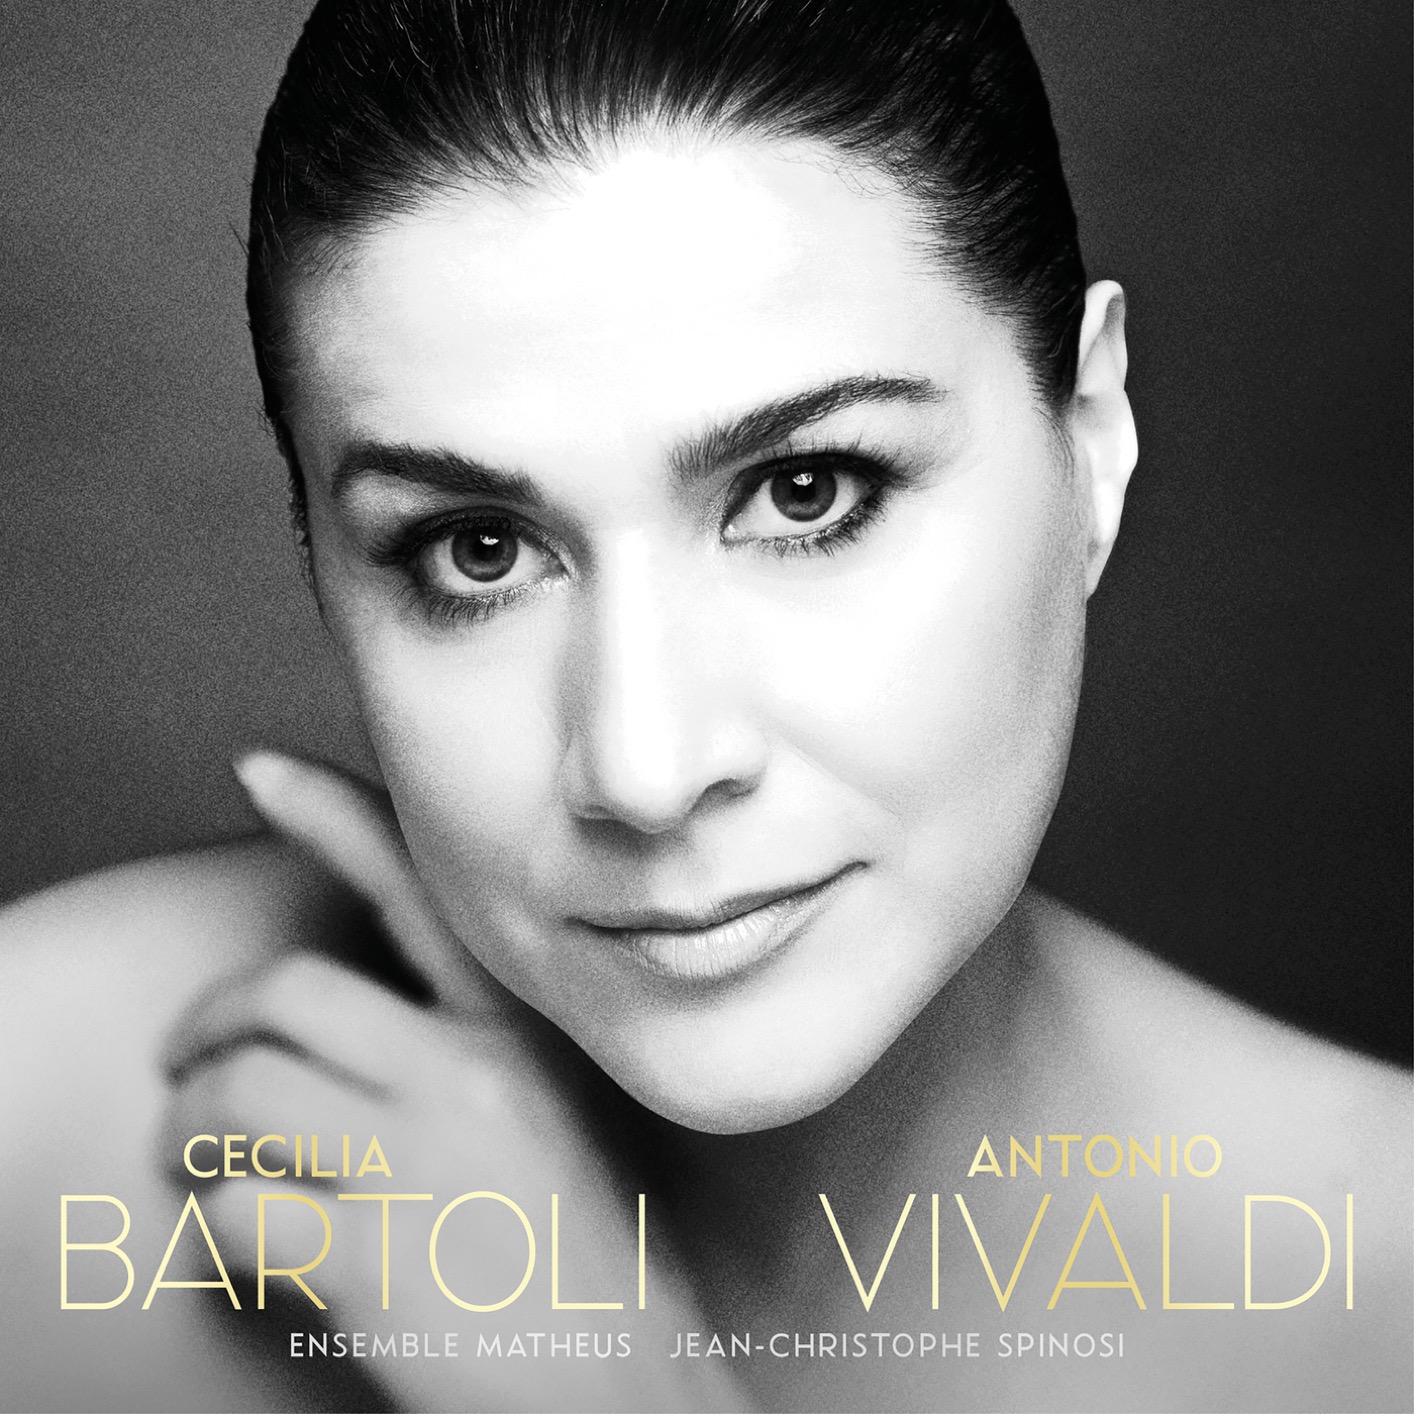 Cecilia Bartoli – Antonio Vivaldi (2018) [FLAC 24bit/96kHz]